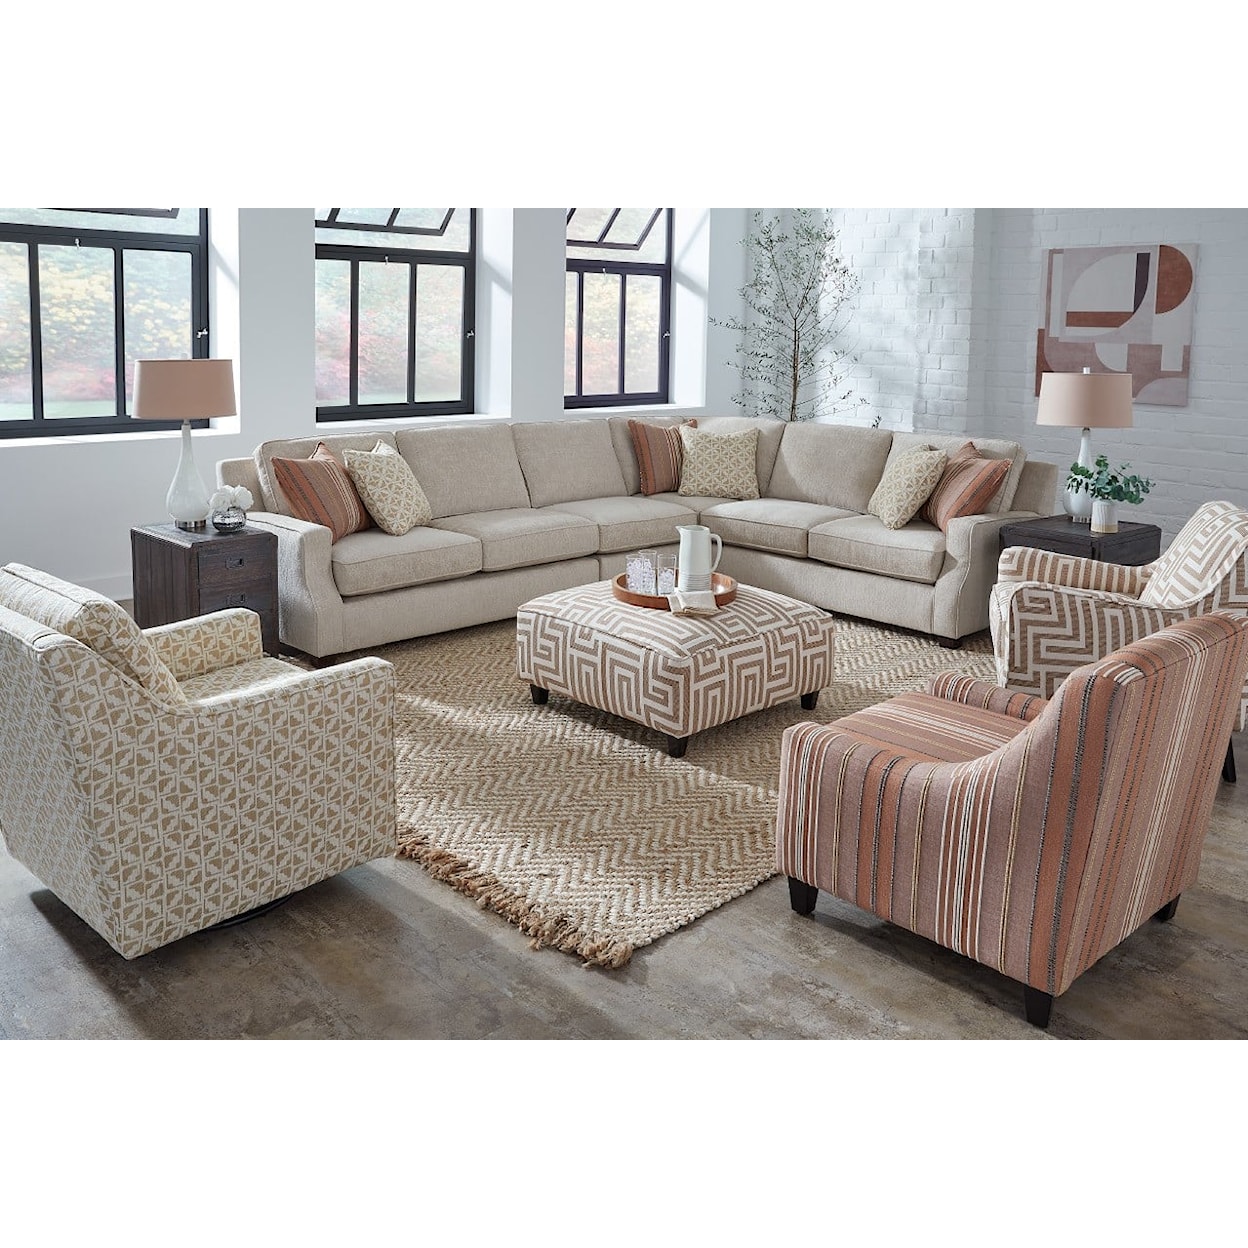 Fusion Furniture 5006 ARTESIA SAND Sectional Sofa